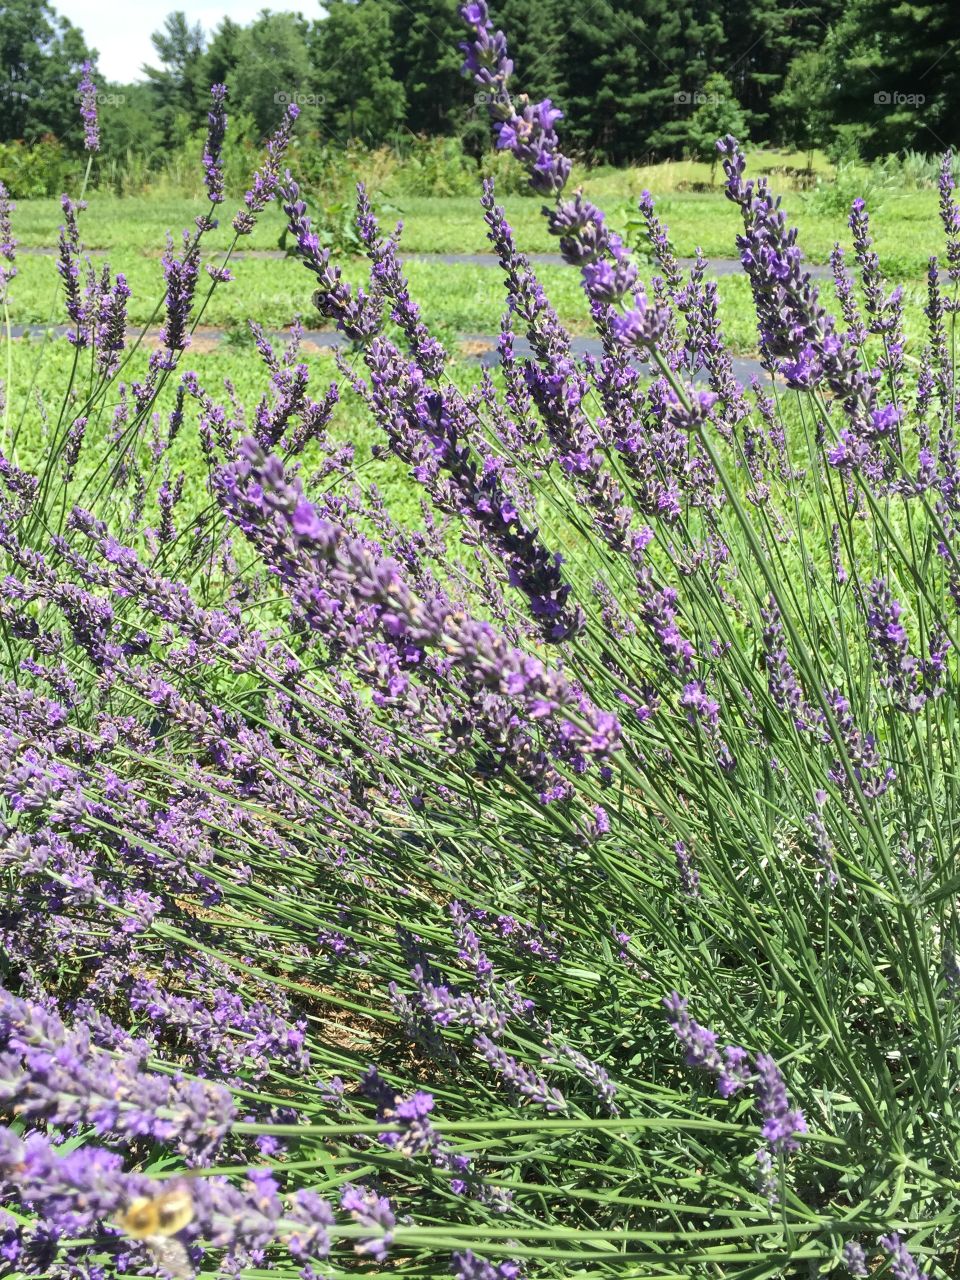 Purple stalks of lavender in full bloom